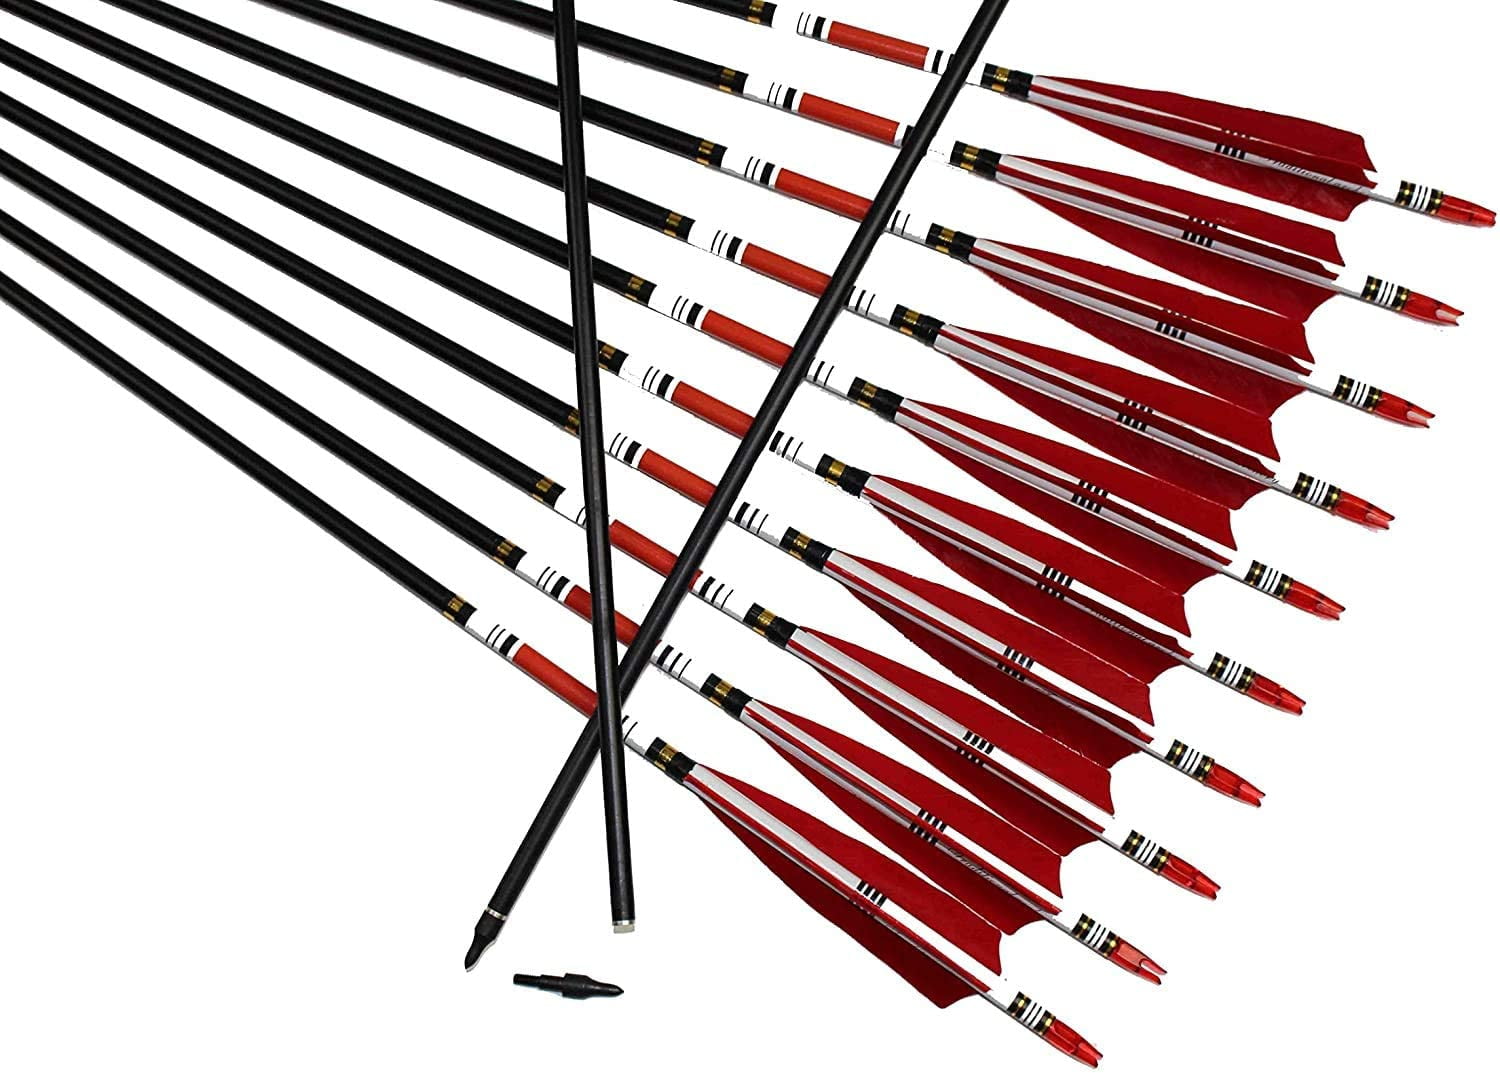 Details about   31" Archery Carbon Arrows SP700 Turkey Feathers Tips Compound Recurve Bow Target 